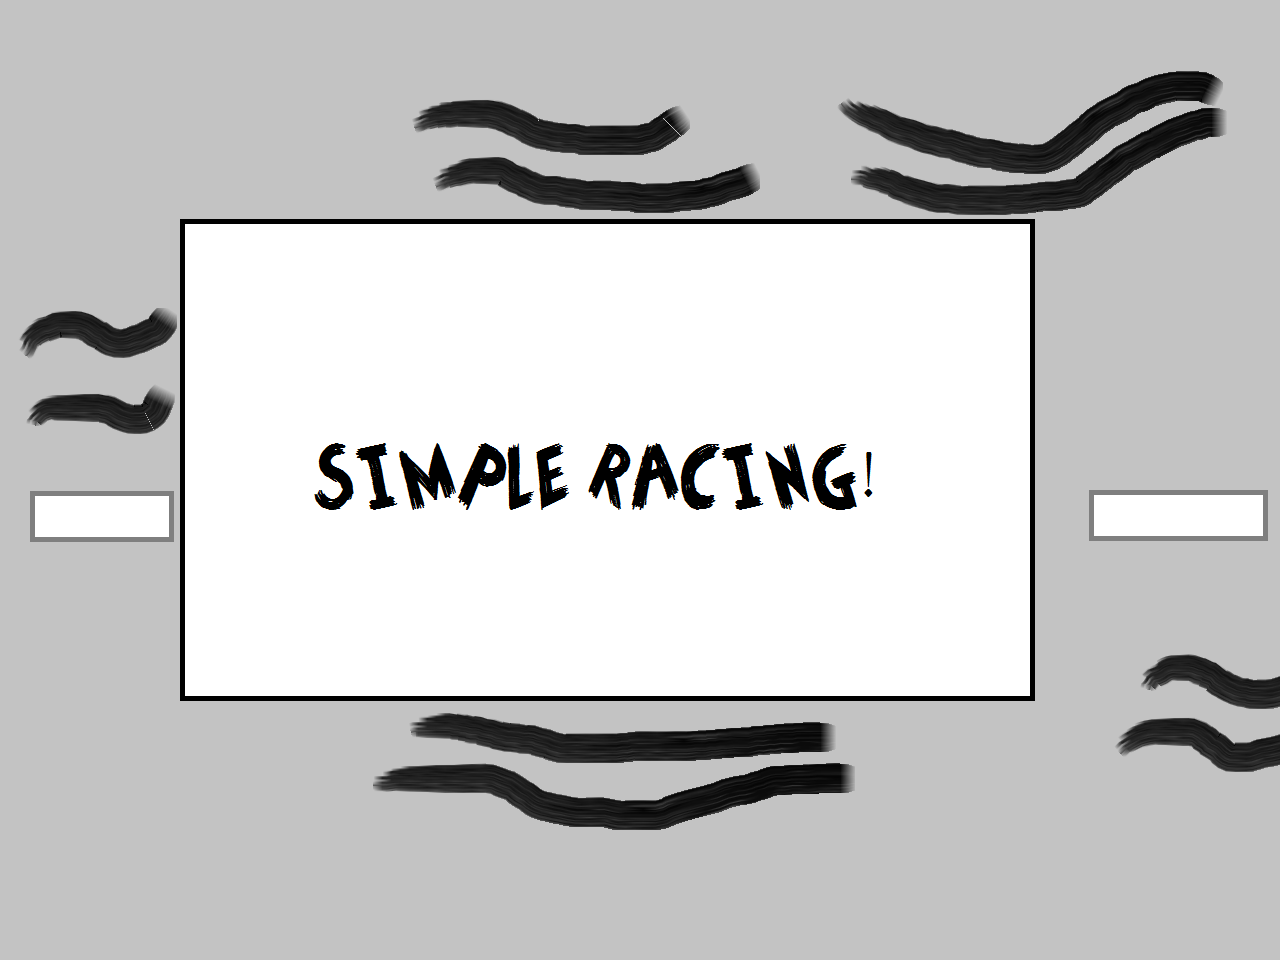 Simple Racing!